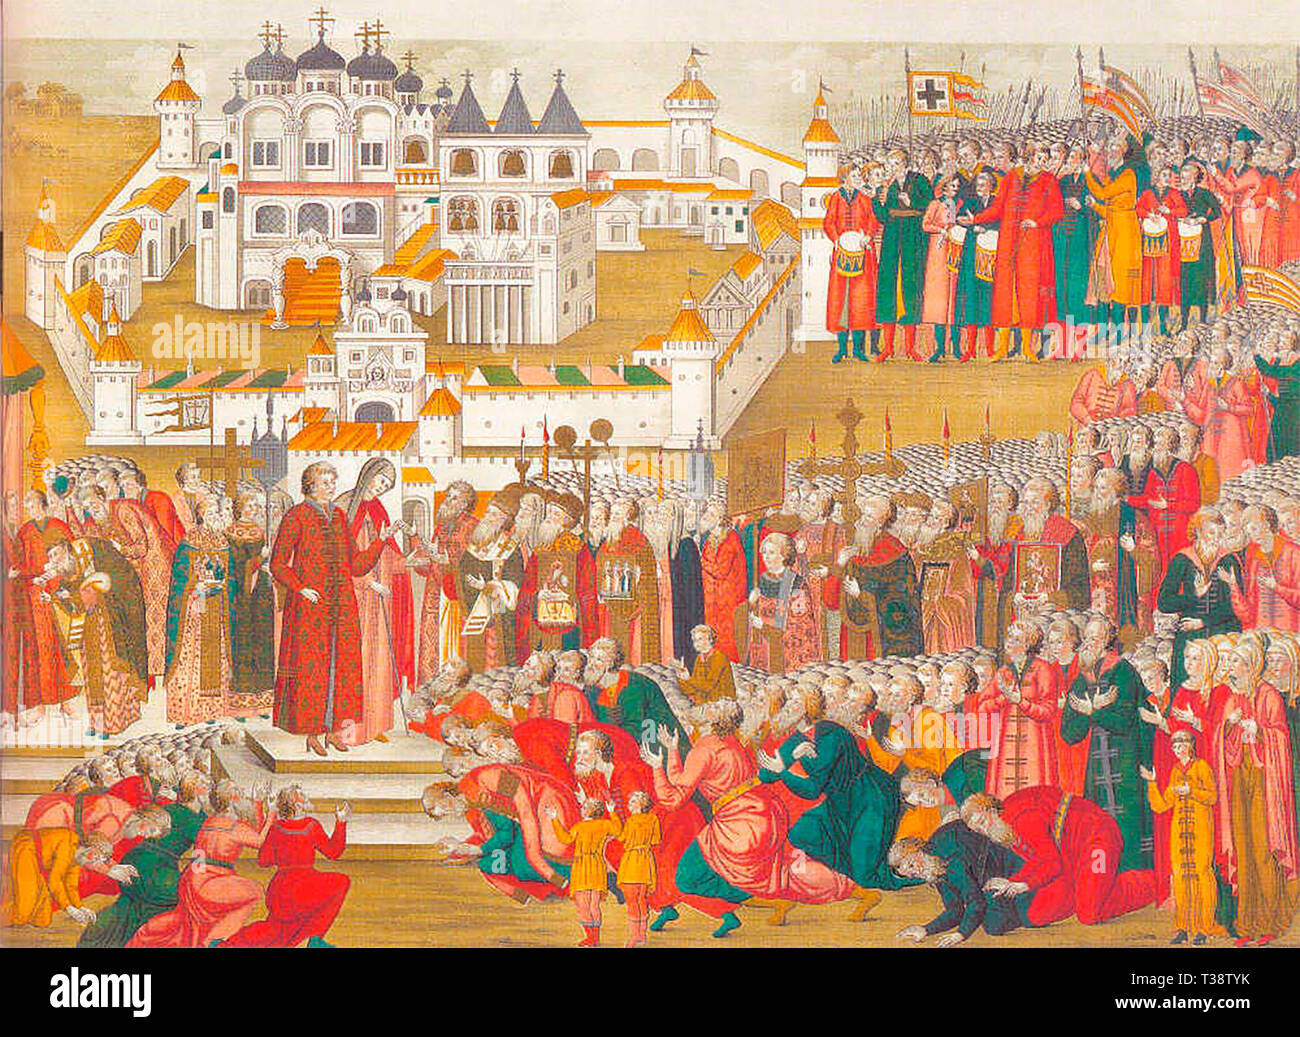 L'allumage d'un livre datant de 1673. Il s'agit d'une foule à la monastère Ipatiev implorant la mère de Mikhail Romanov de le laisser aller à Moscou et à devenir leur tsar. Circa 1672 Banque D'Images